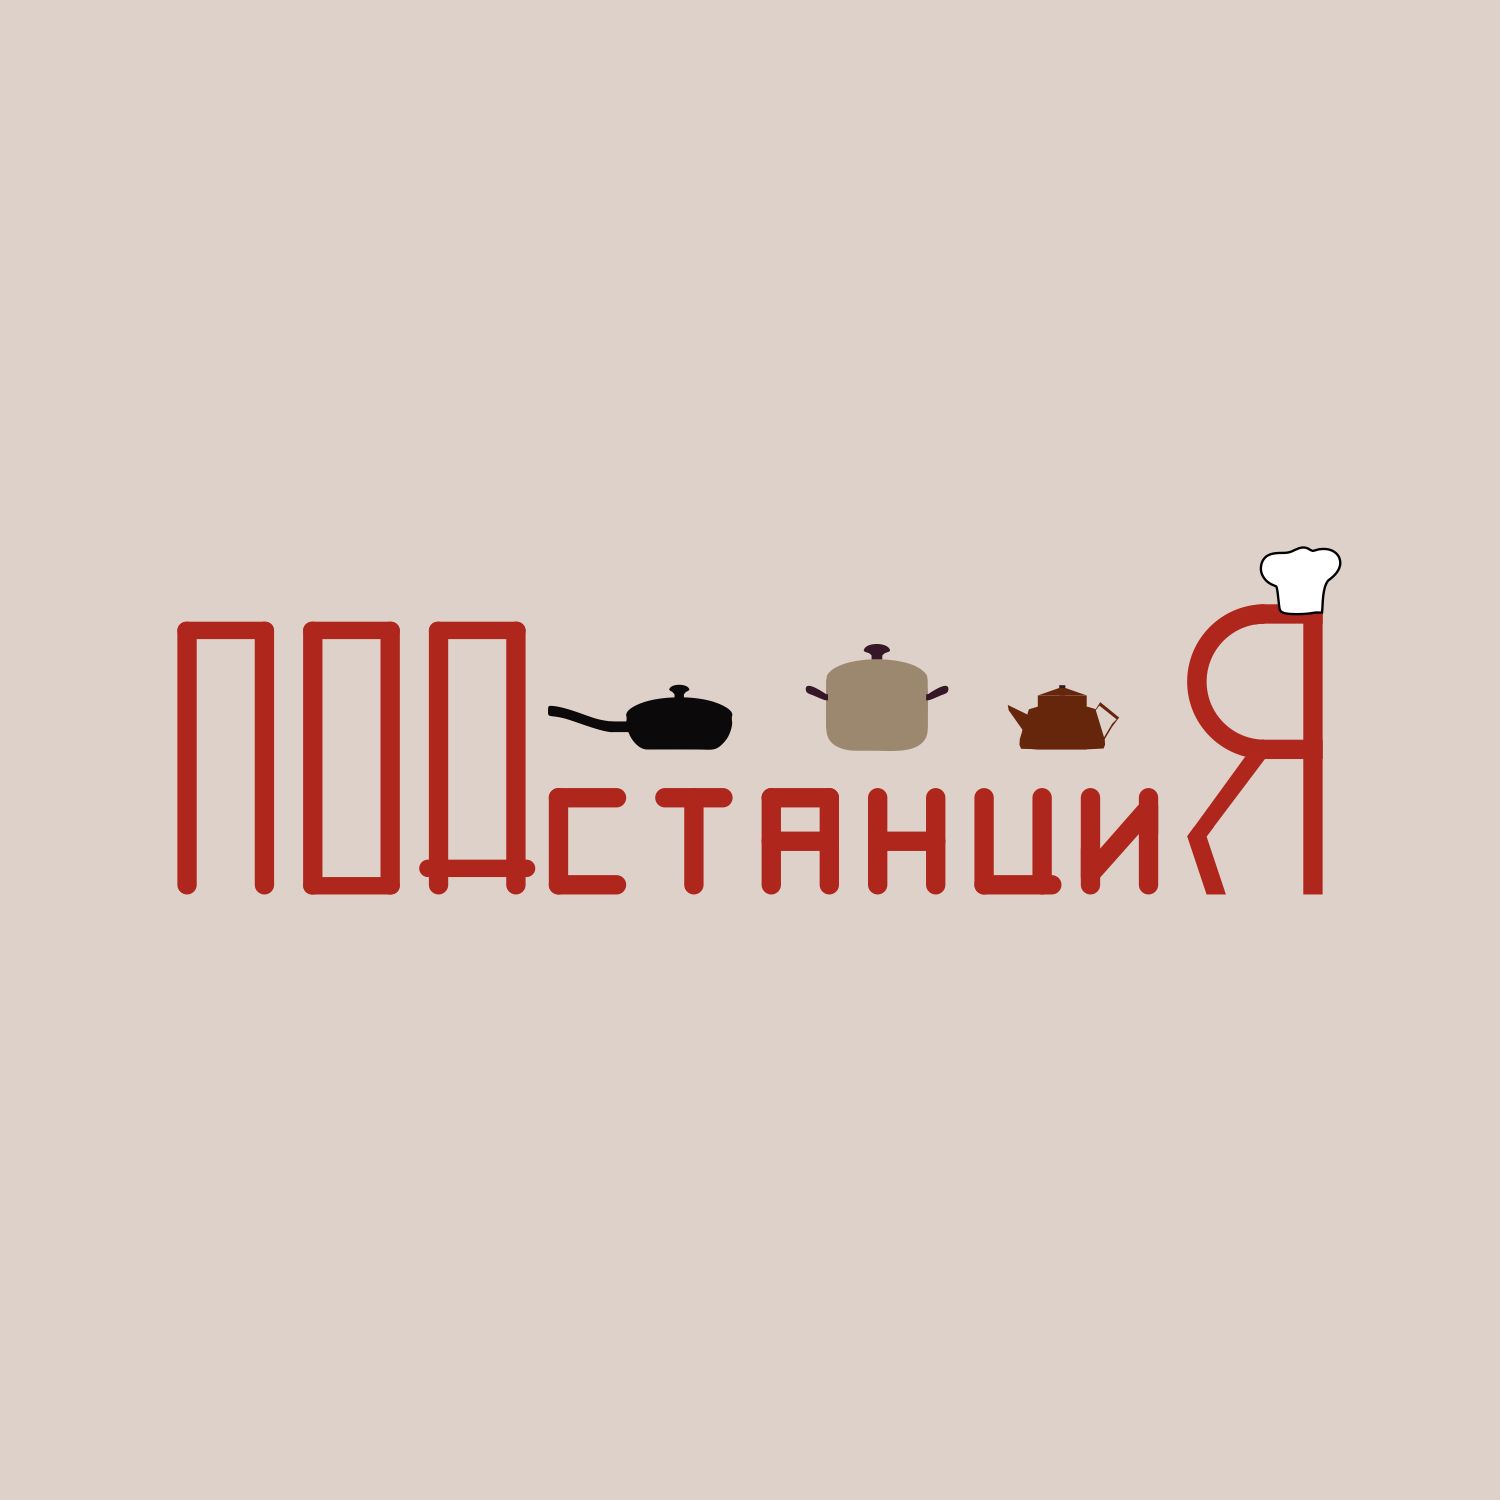 Логотип для Логотип для Кафе «Подстанция» - дизайнер Tor9